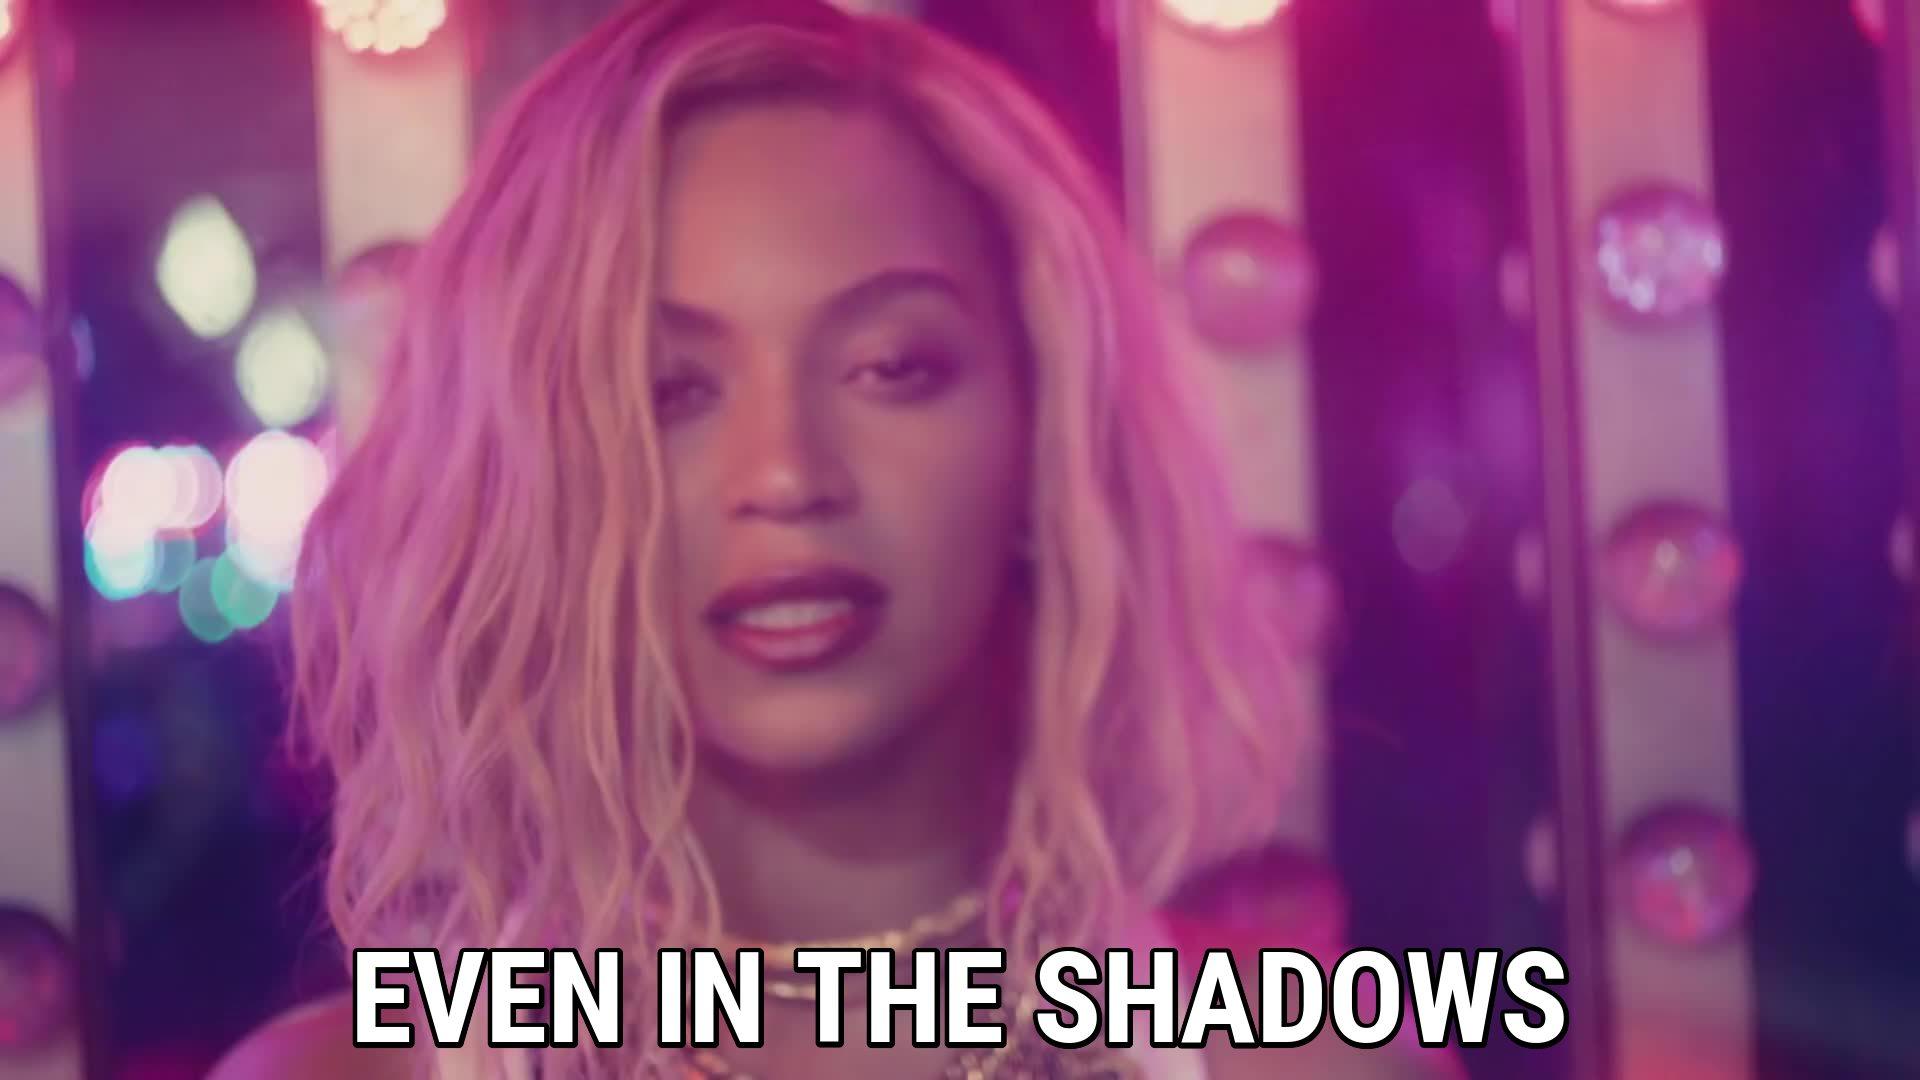 XO lyrics Beyoncé song in image